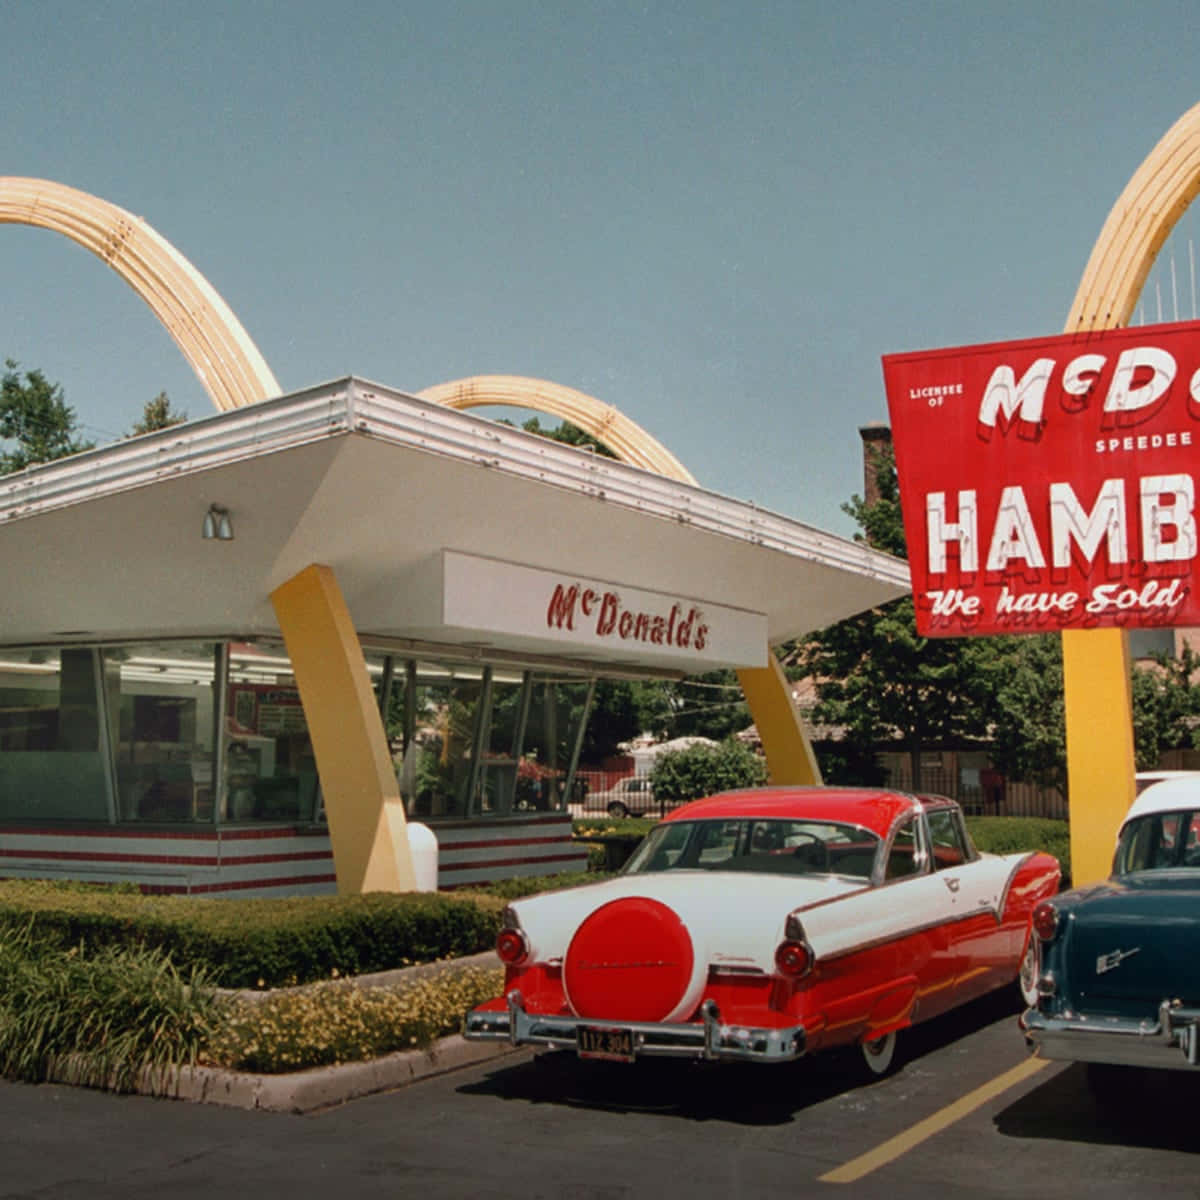 Hambúrgueresdo Mcdonald's Na Década De 1950.